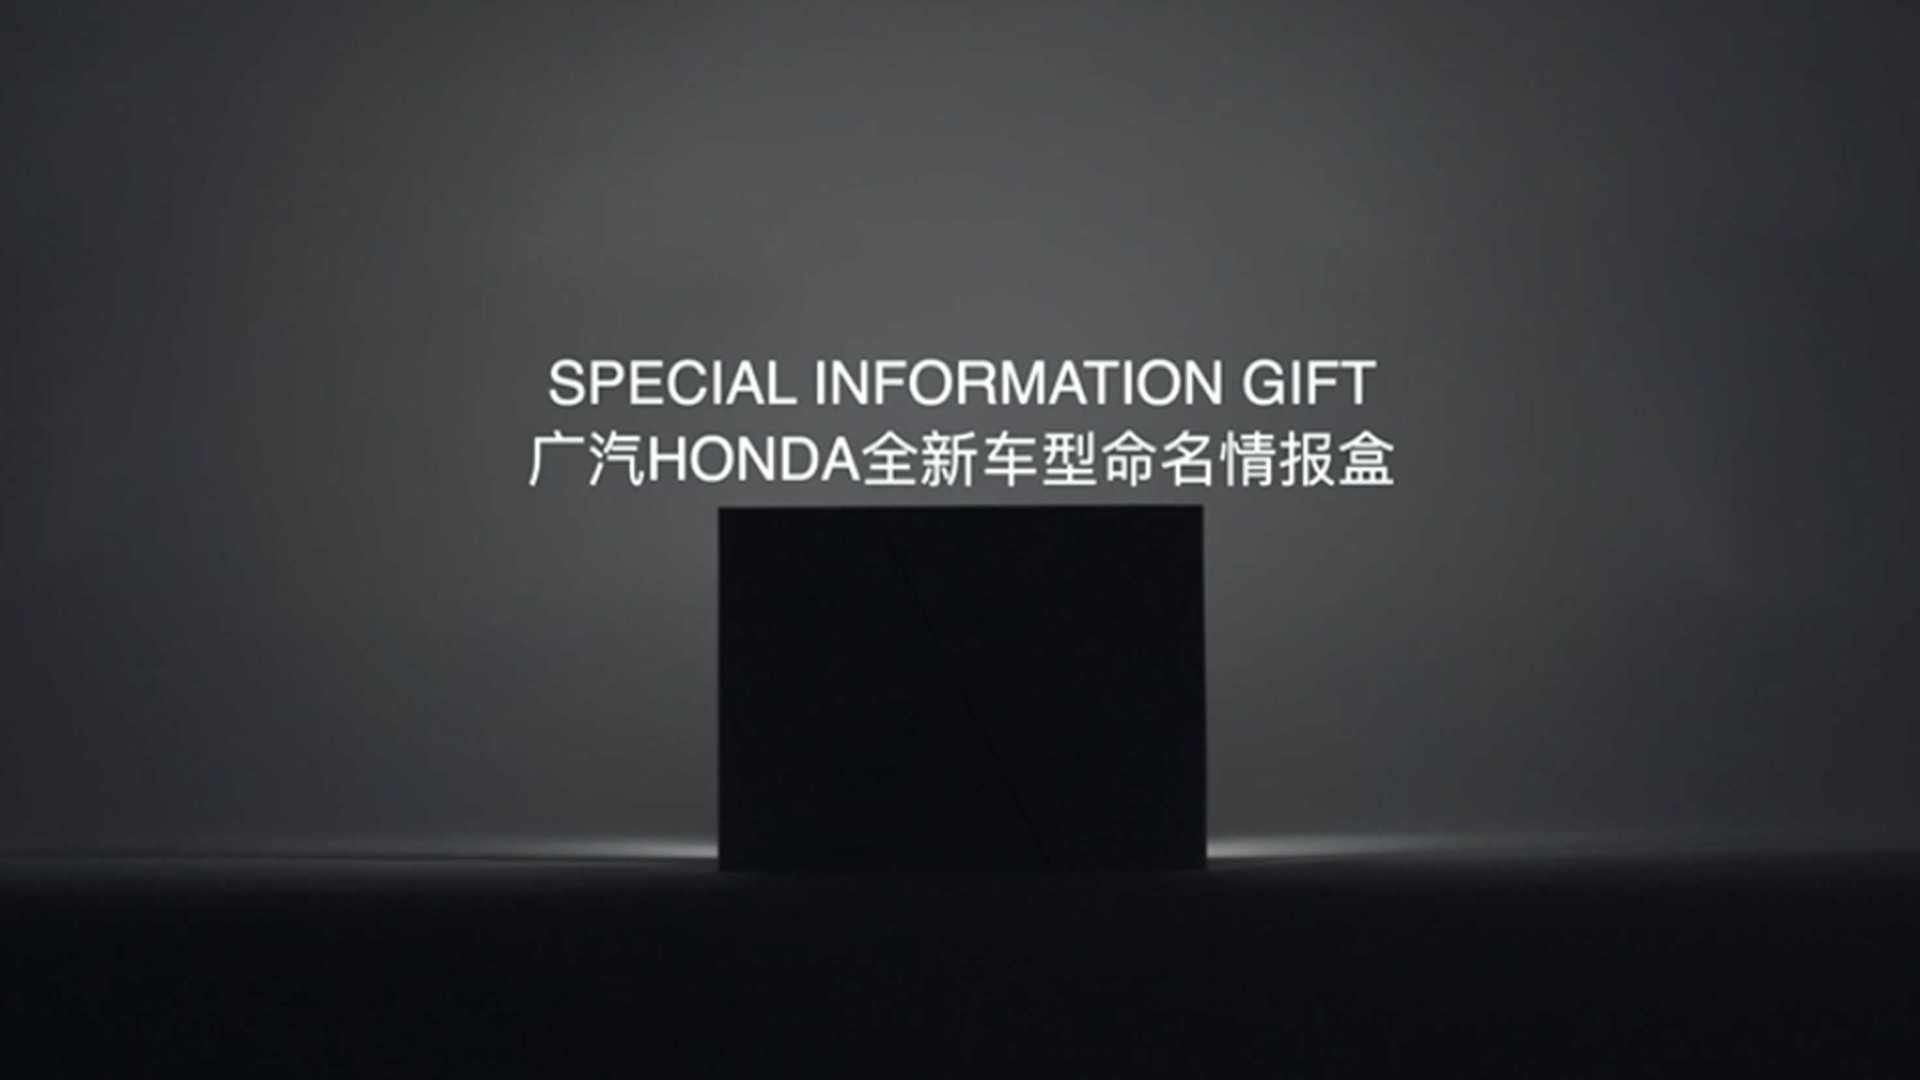 广汽本田创意短视频《新车型命名情报盒》